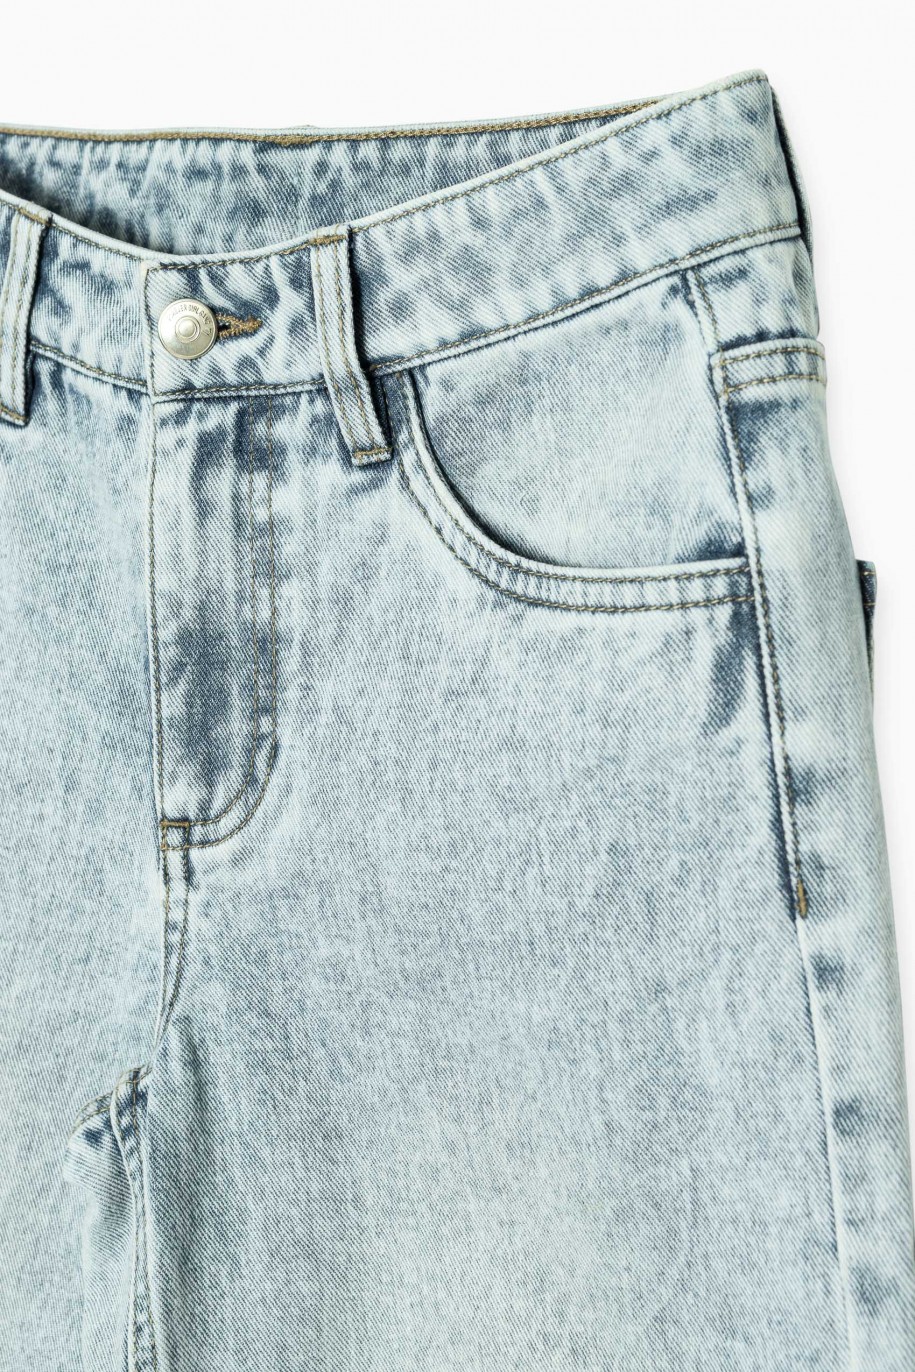 Niebieskie jeansowe spodnie typu WIDE LEG - 43788